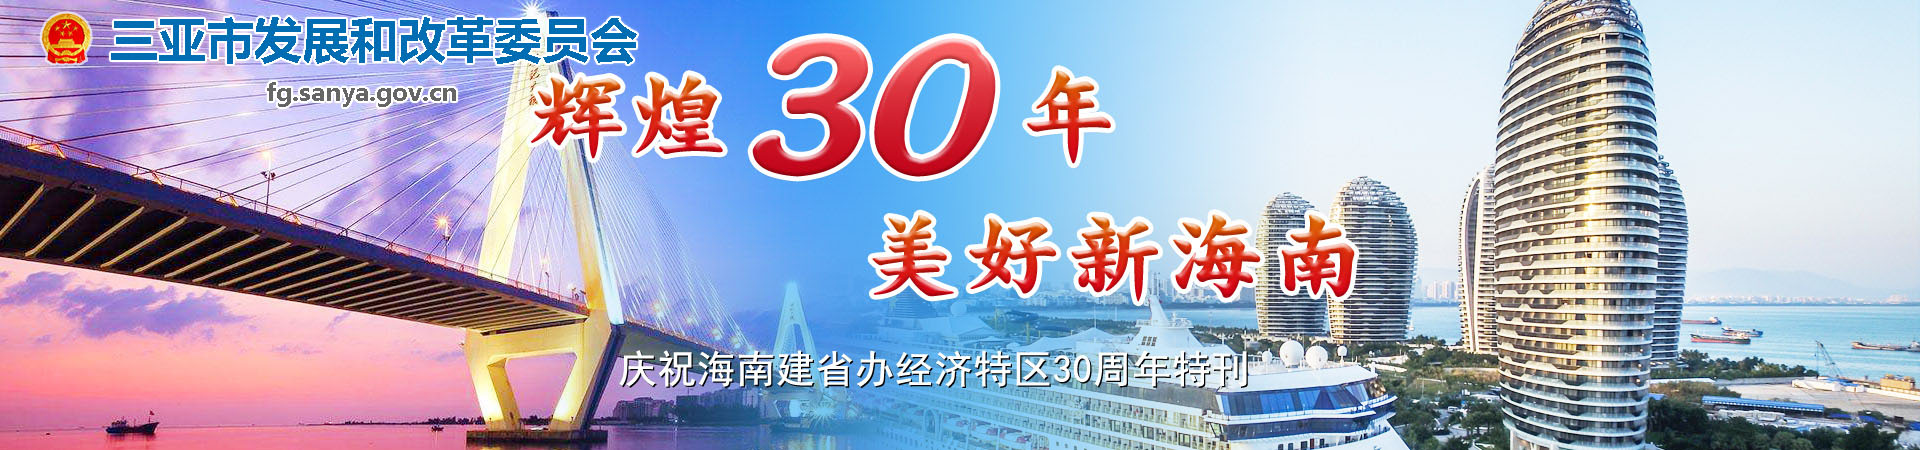 辉煌三十年 美好新海南 庆祝海南建省办经济特区30周年特刊